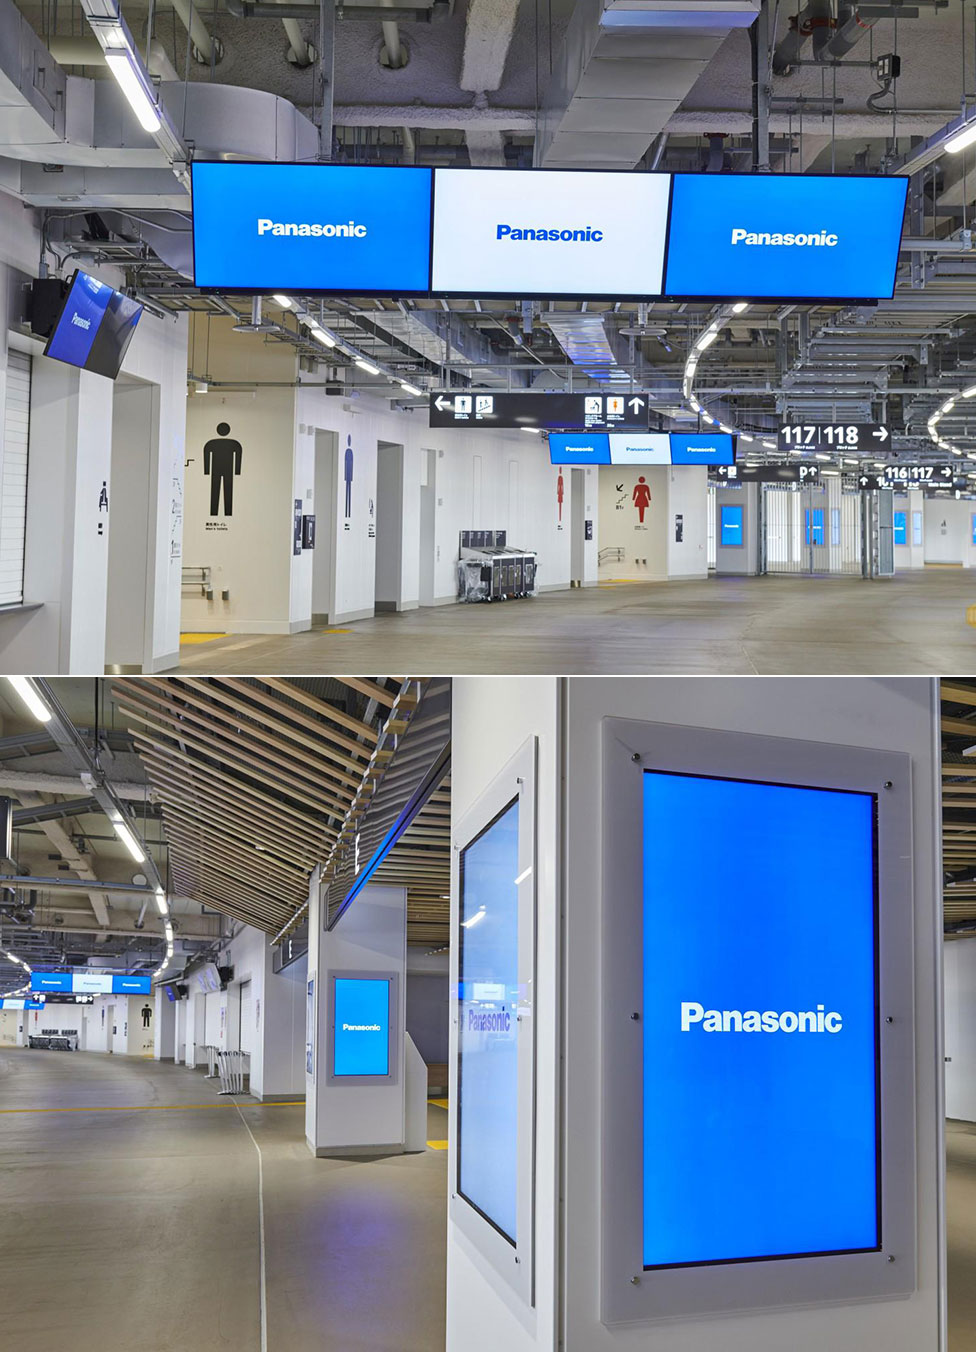 Hệ thống bảng điện tử AcroSign® của Panasonic cung cấp nhiều thông tin khác nhau trong sân vận động một cách hiệu quả.
Nội dung hiển thị có thể được thay đổi tùy theo khu vực.